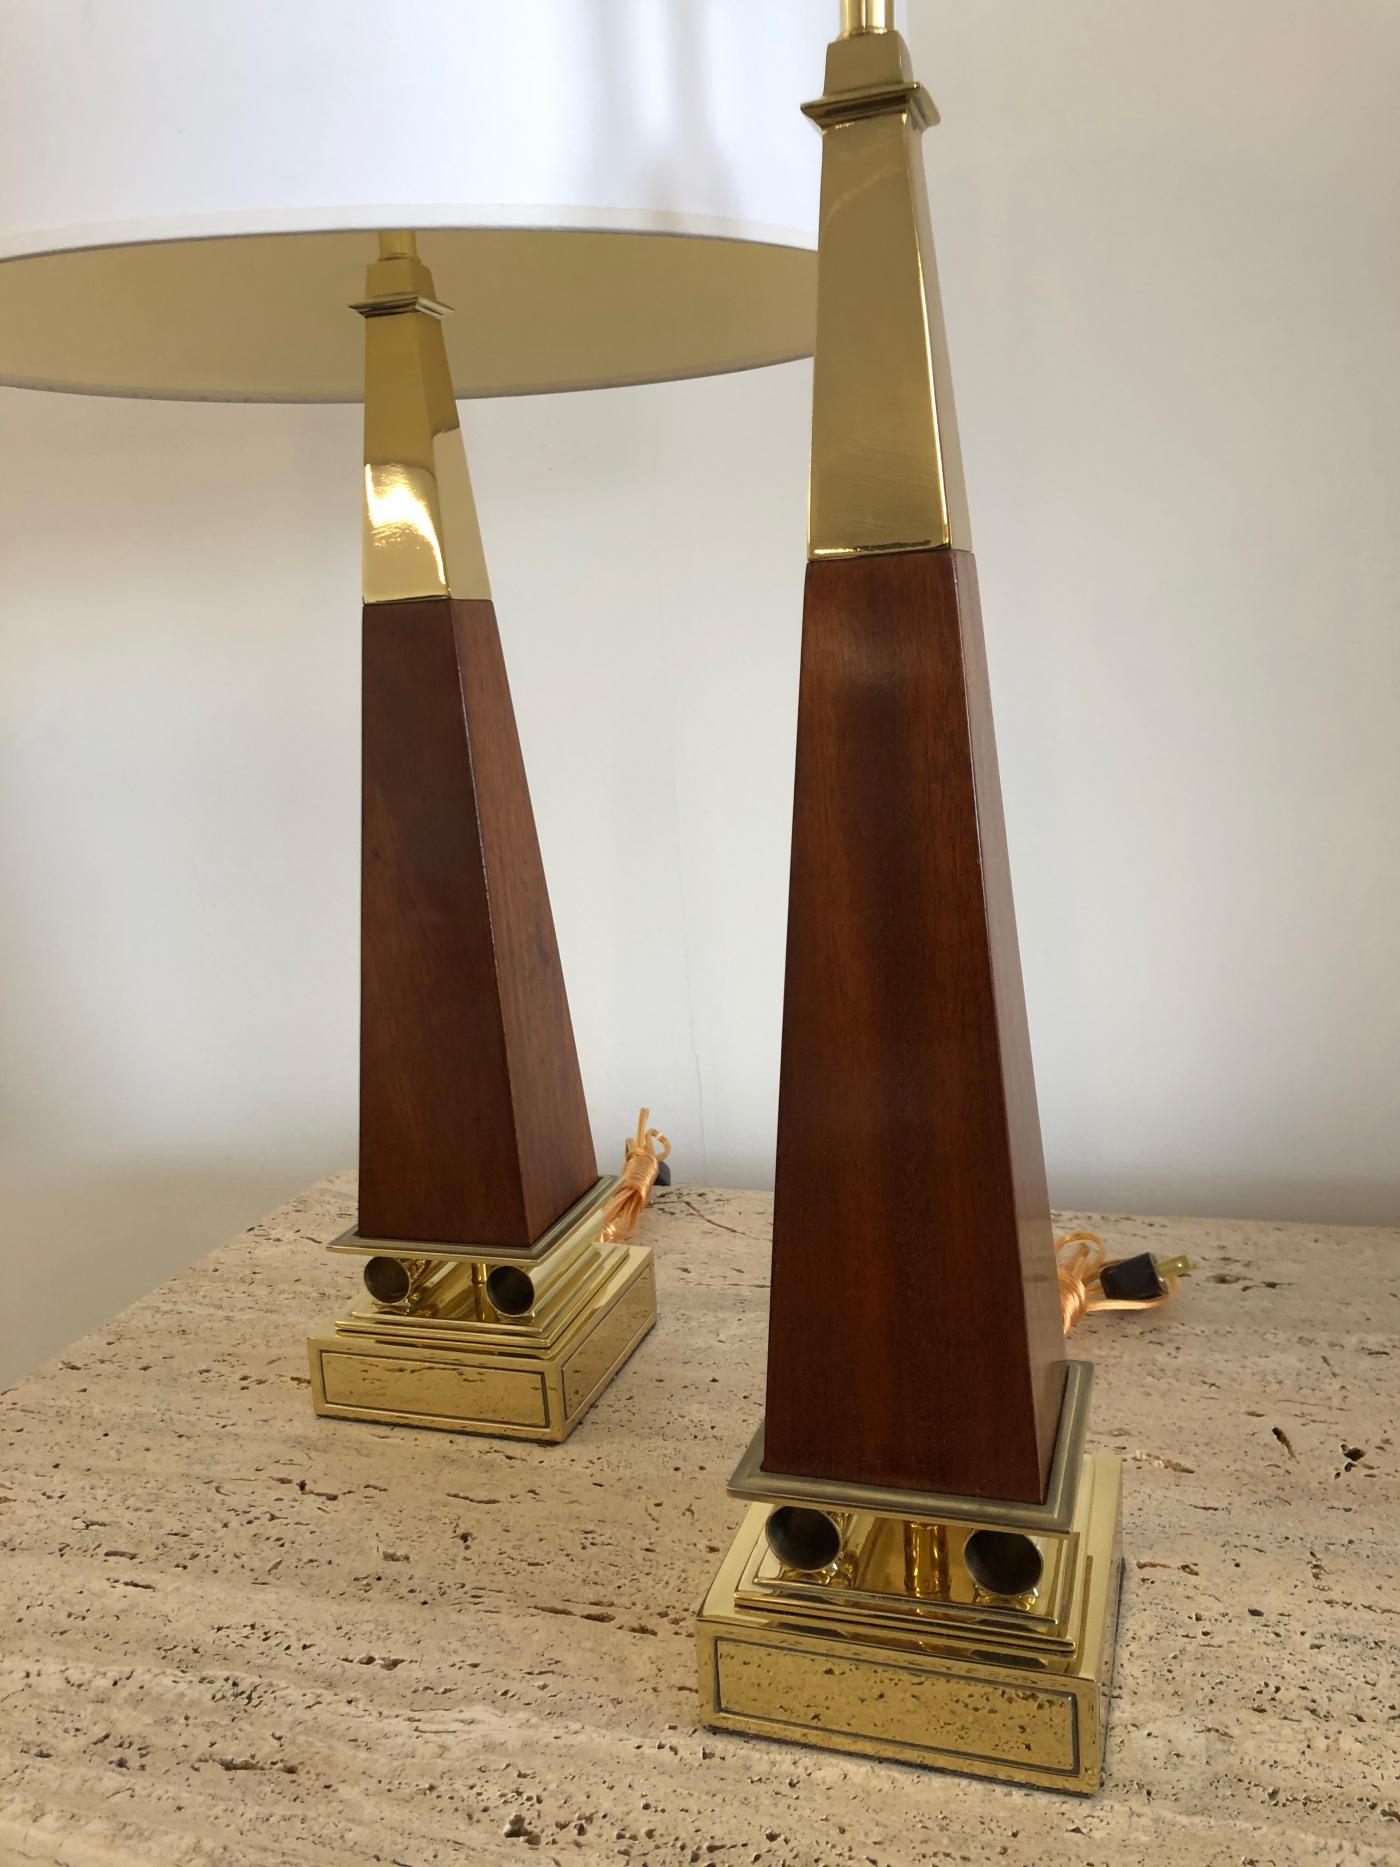 Pair of Obelisk Lamps.